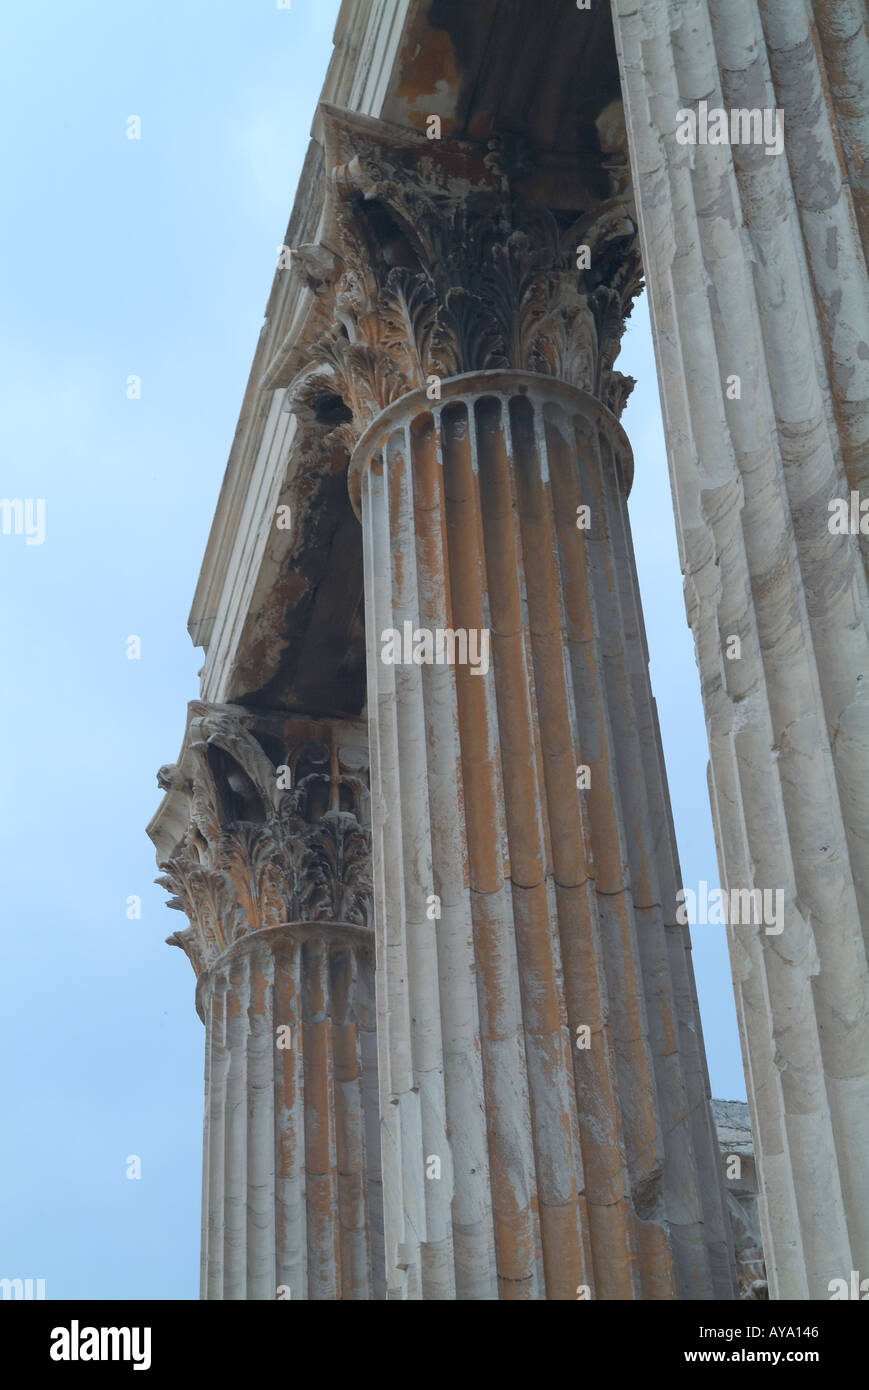 Greece Athens Temple of Zeus Column Detail Stock Photo